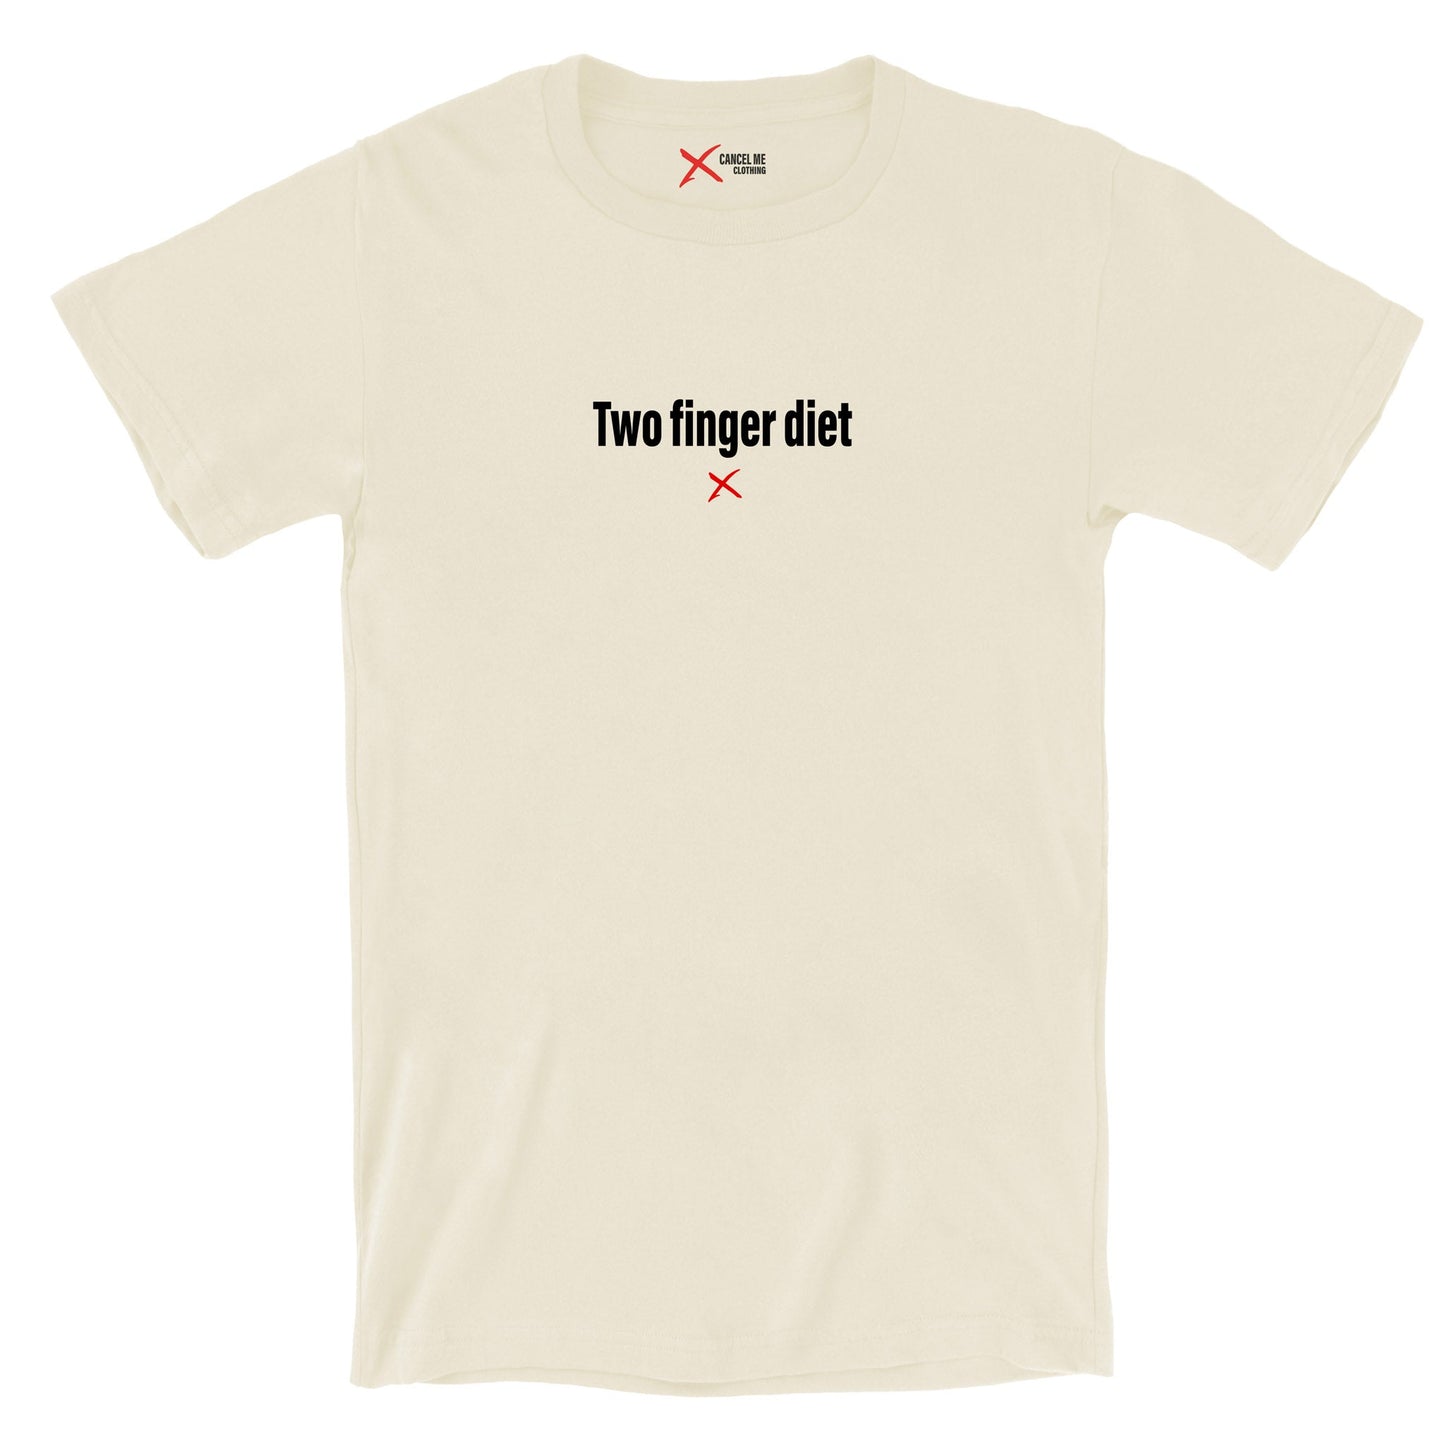 Two finger diet - Shirt